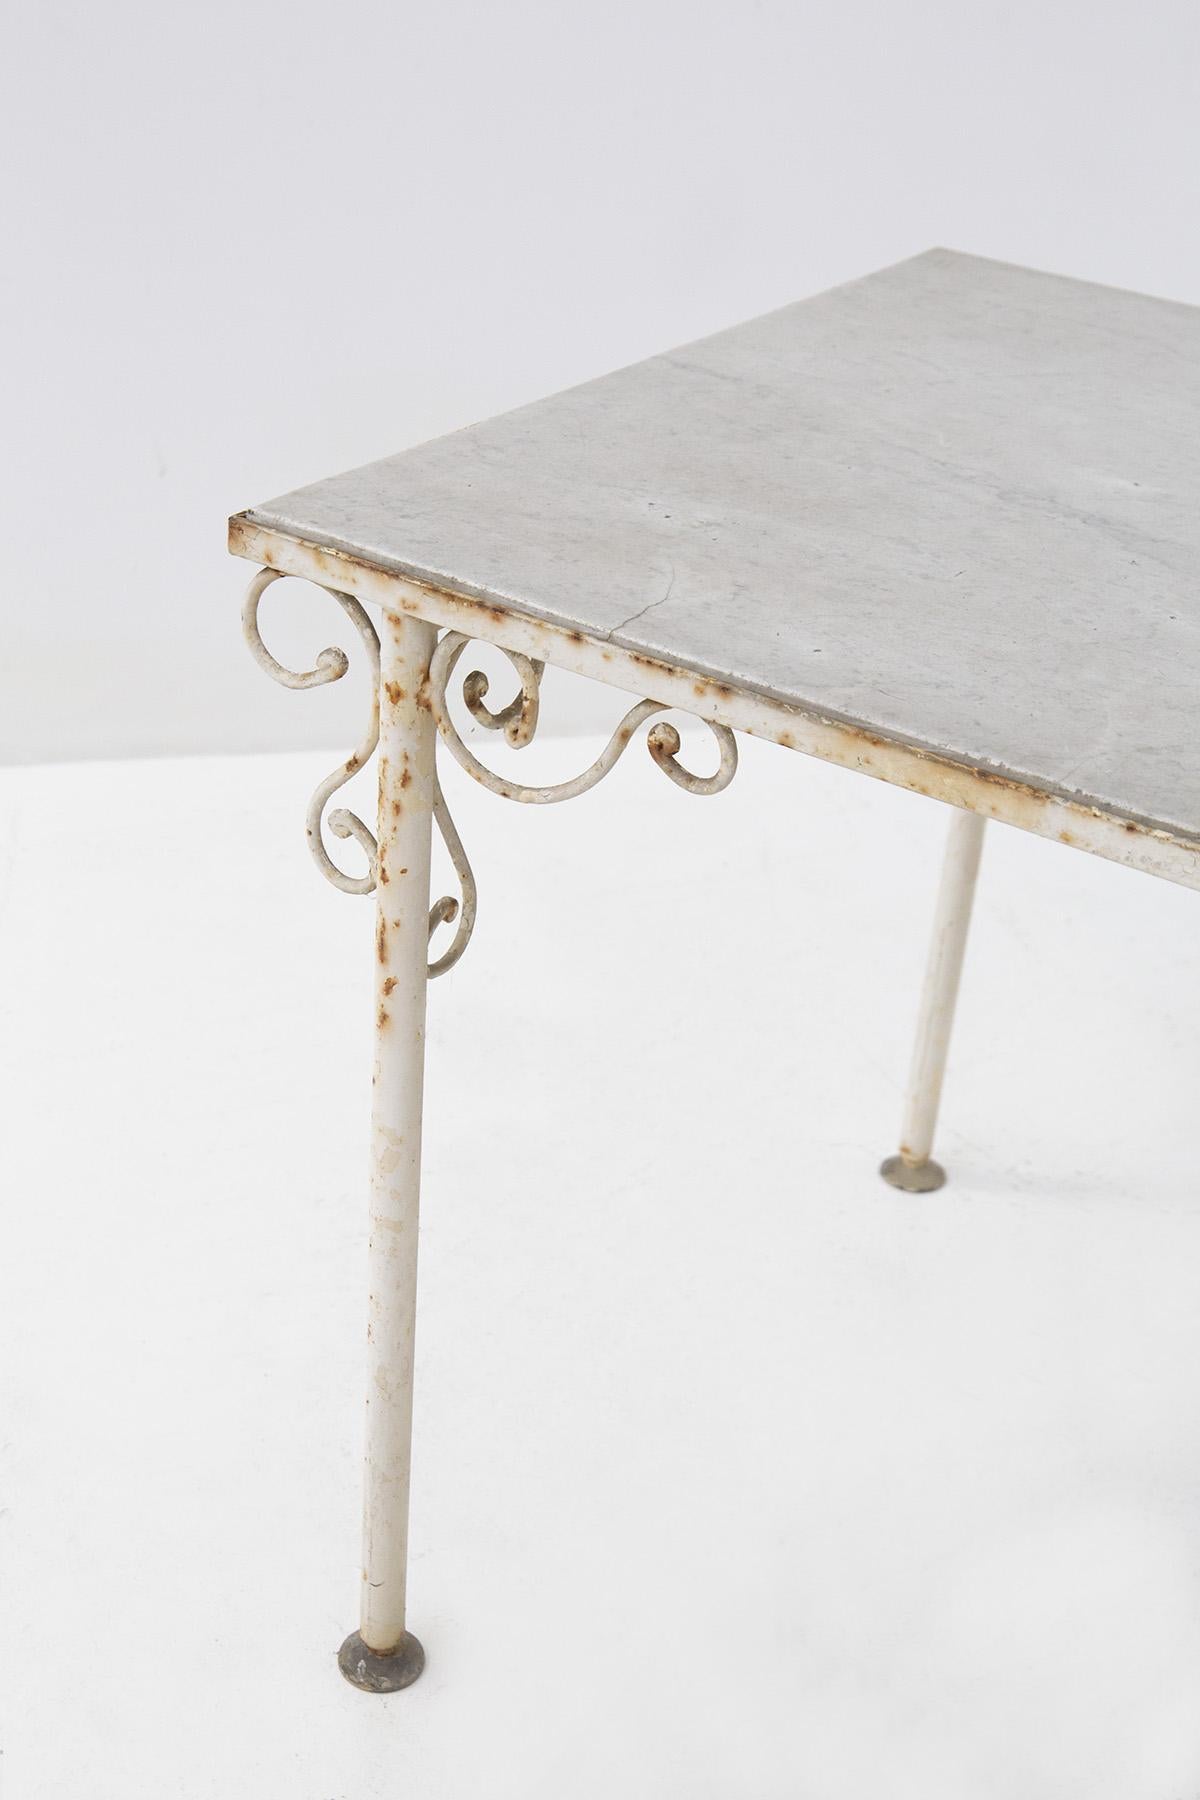 Schöner französischer Tisch aus den späten 1800er Jahren, hergestellt in Frankreich im Stil des Rustic Chic.
Der Tisch hat einen schmiedeeisernen, weiß lackierten Rahmen und vier zylindrische Beine, die die Platte tragen. Das Wunder der